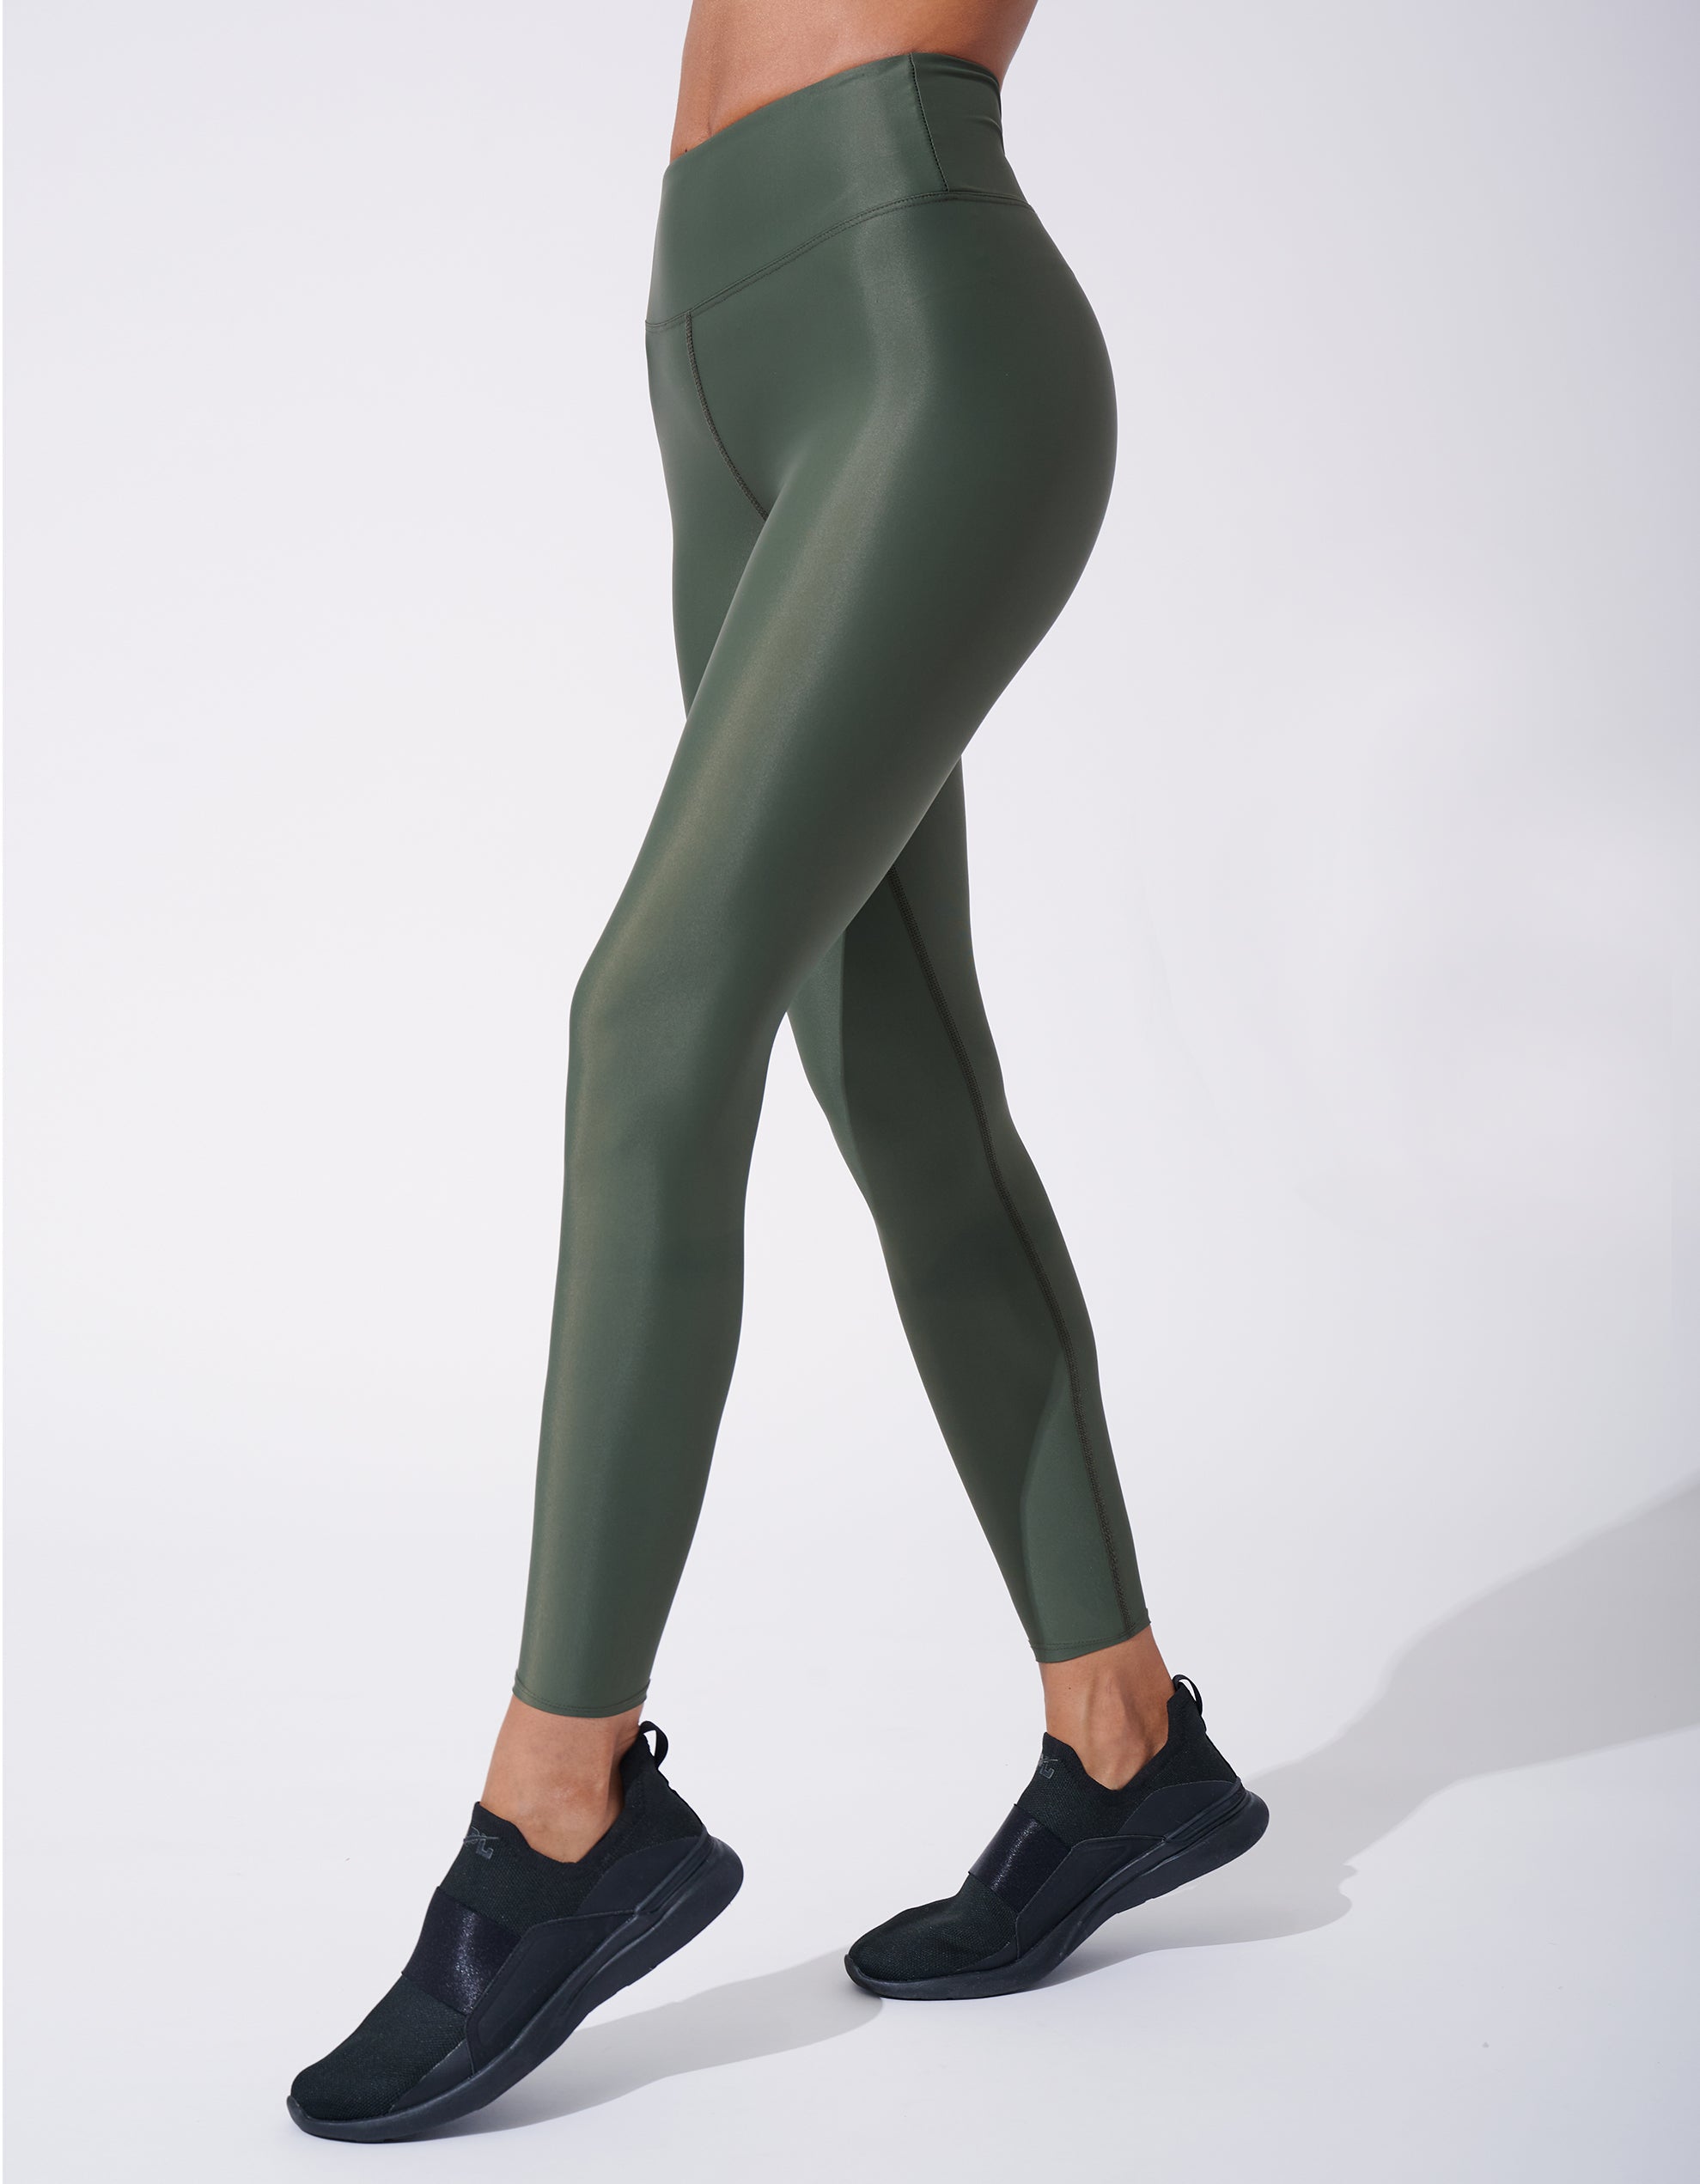 Green V-Shape Waist Leggings 22” & Reviews - Green - Sustainable